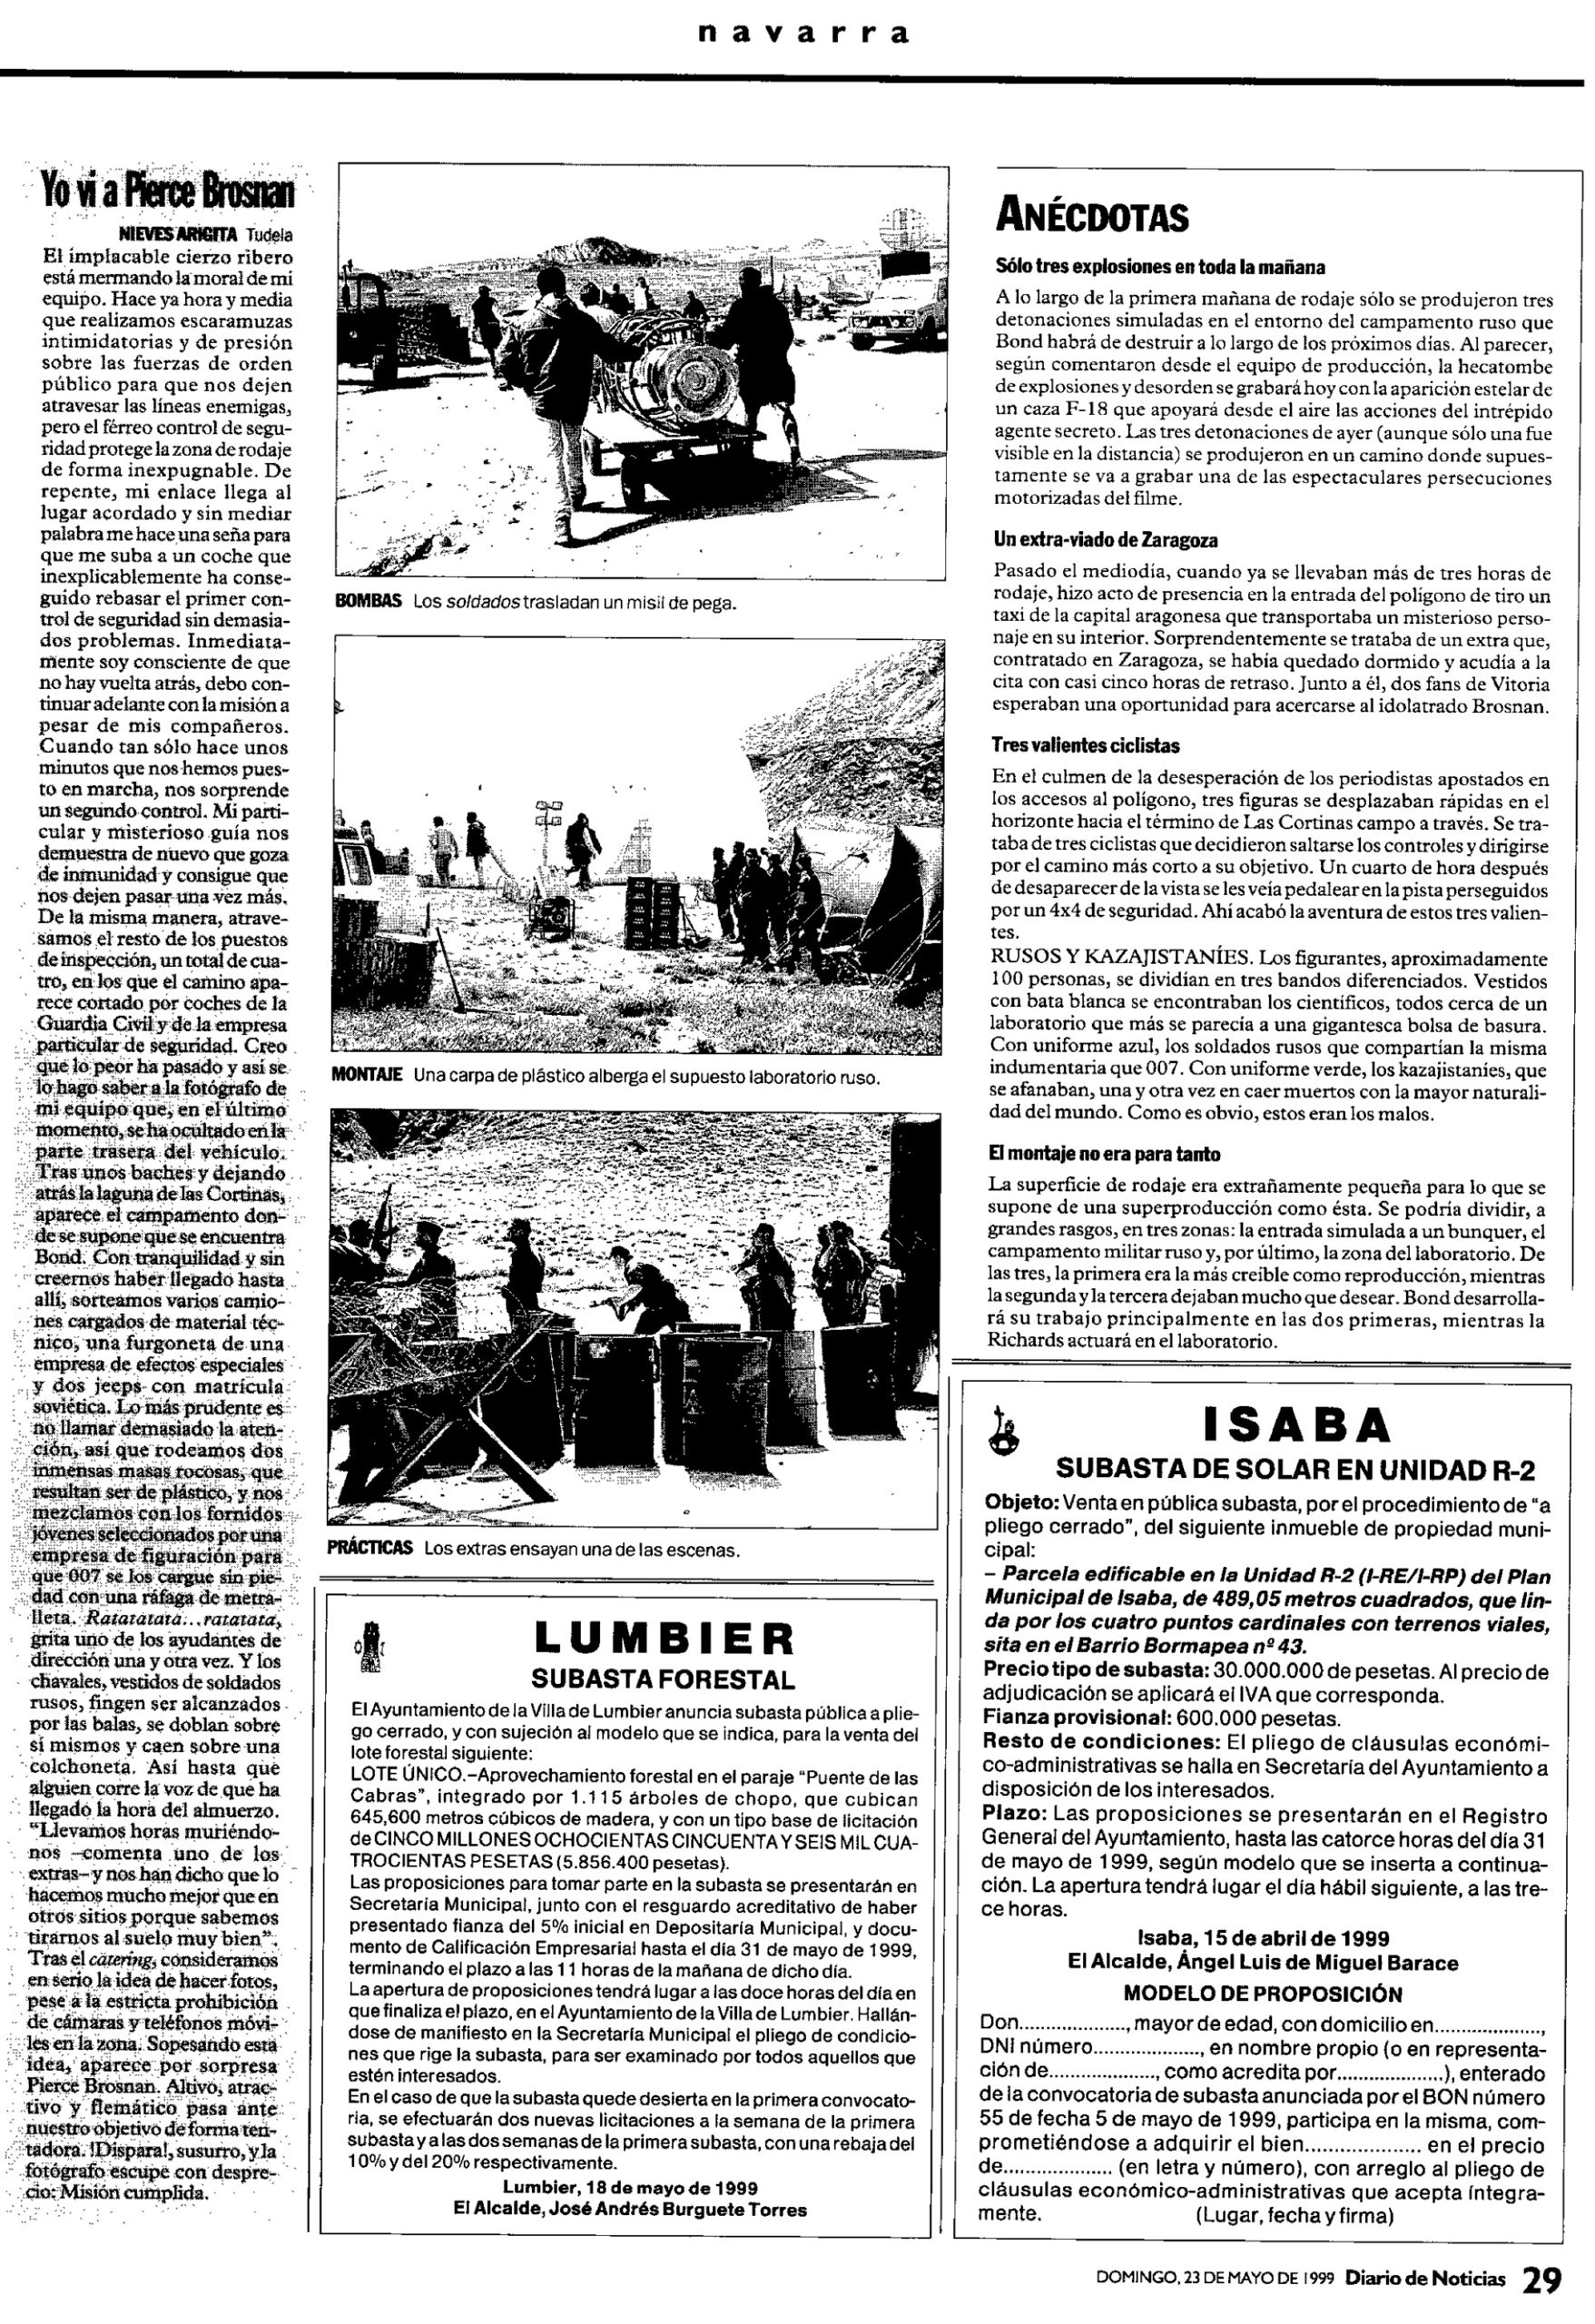 19 1999 05 23 Diario de Noticias Navarra 29 Rodaje Bardenas scaled